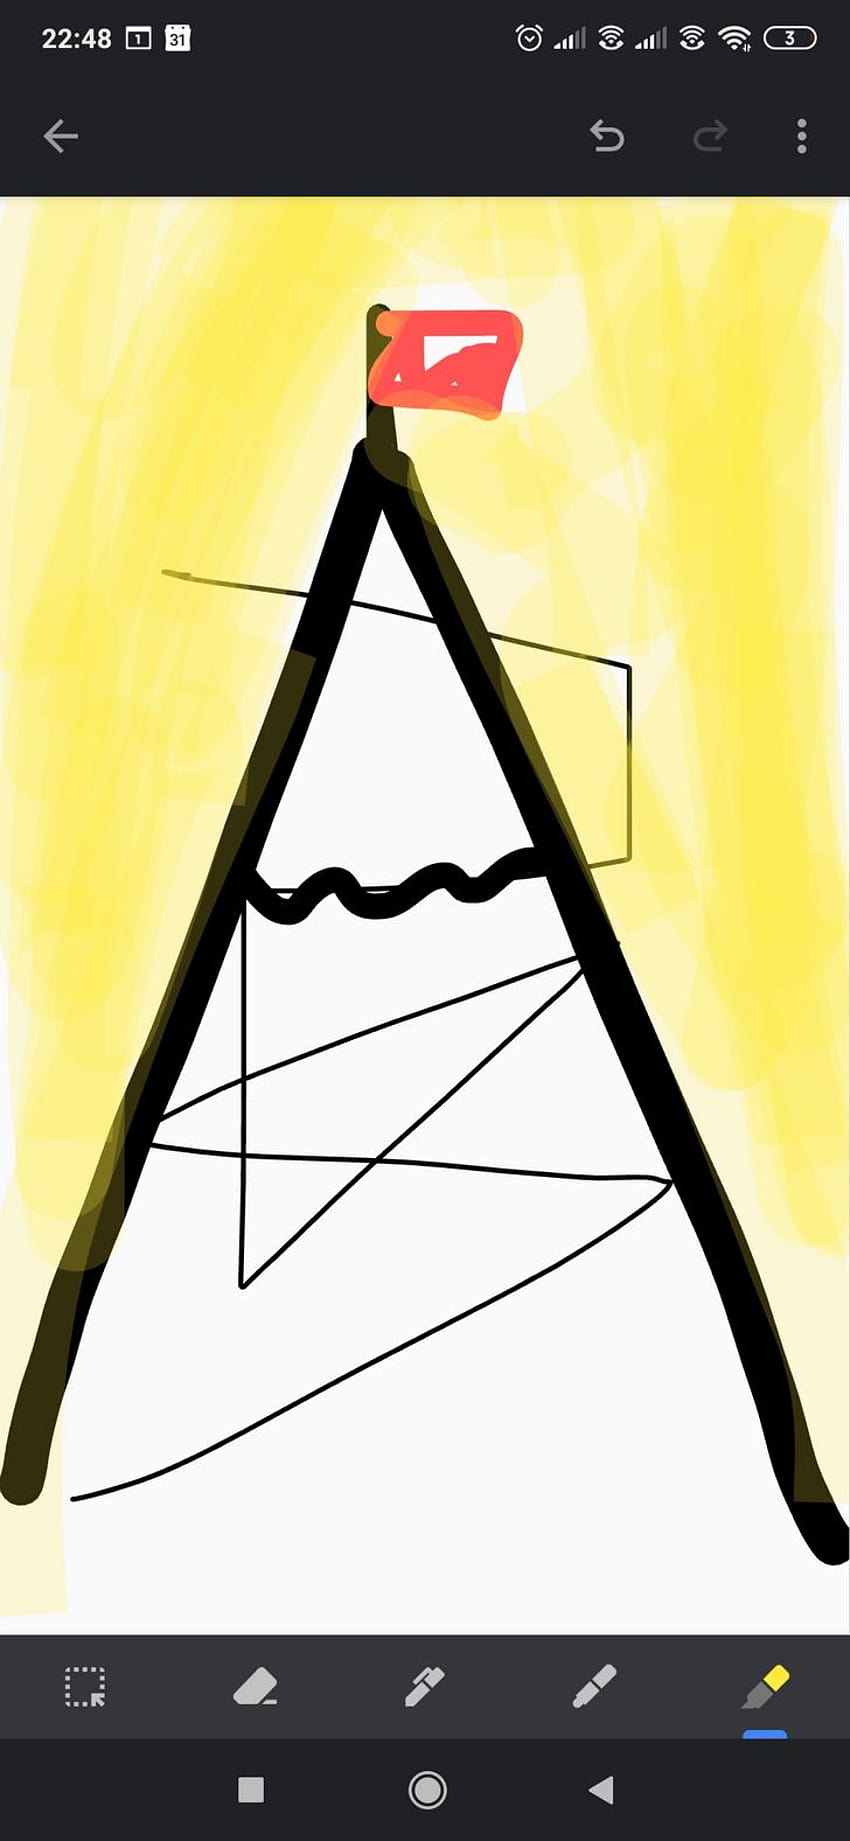 Por favor me ajude a encontrar um arquivo . Desenho de uma montanha com um caminho em zigue-zague e um homem subindo por ela. Parecia algo assim com tons de laranja e vermelho, desenhe alpinista Papel de parede de celular HD